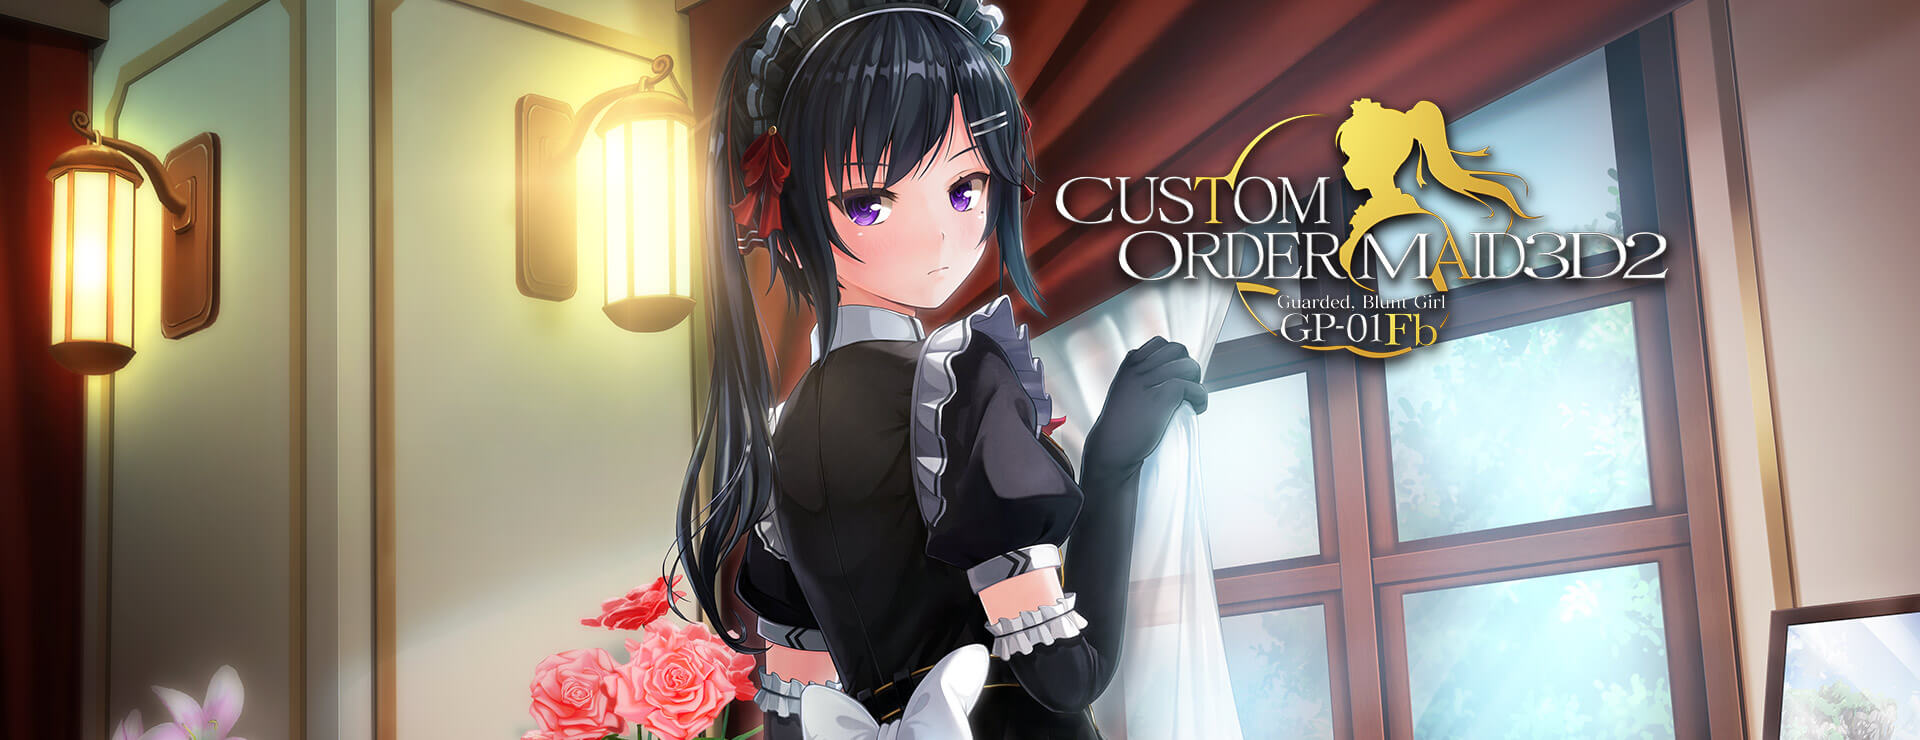 Custom Order Maid 3D2 Guarded, Blunt Girl GP-01fb DLC - Simulation Spiel